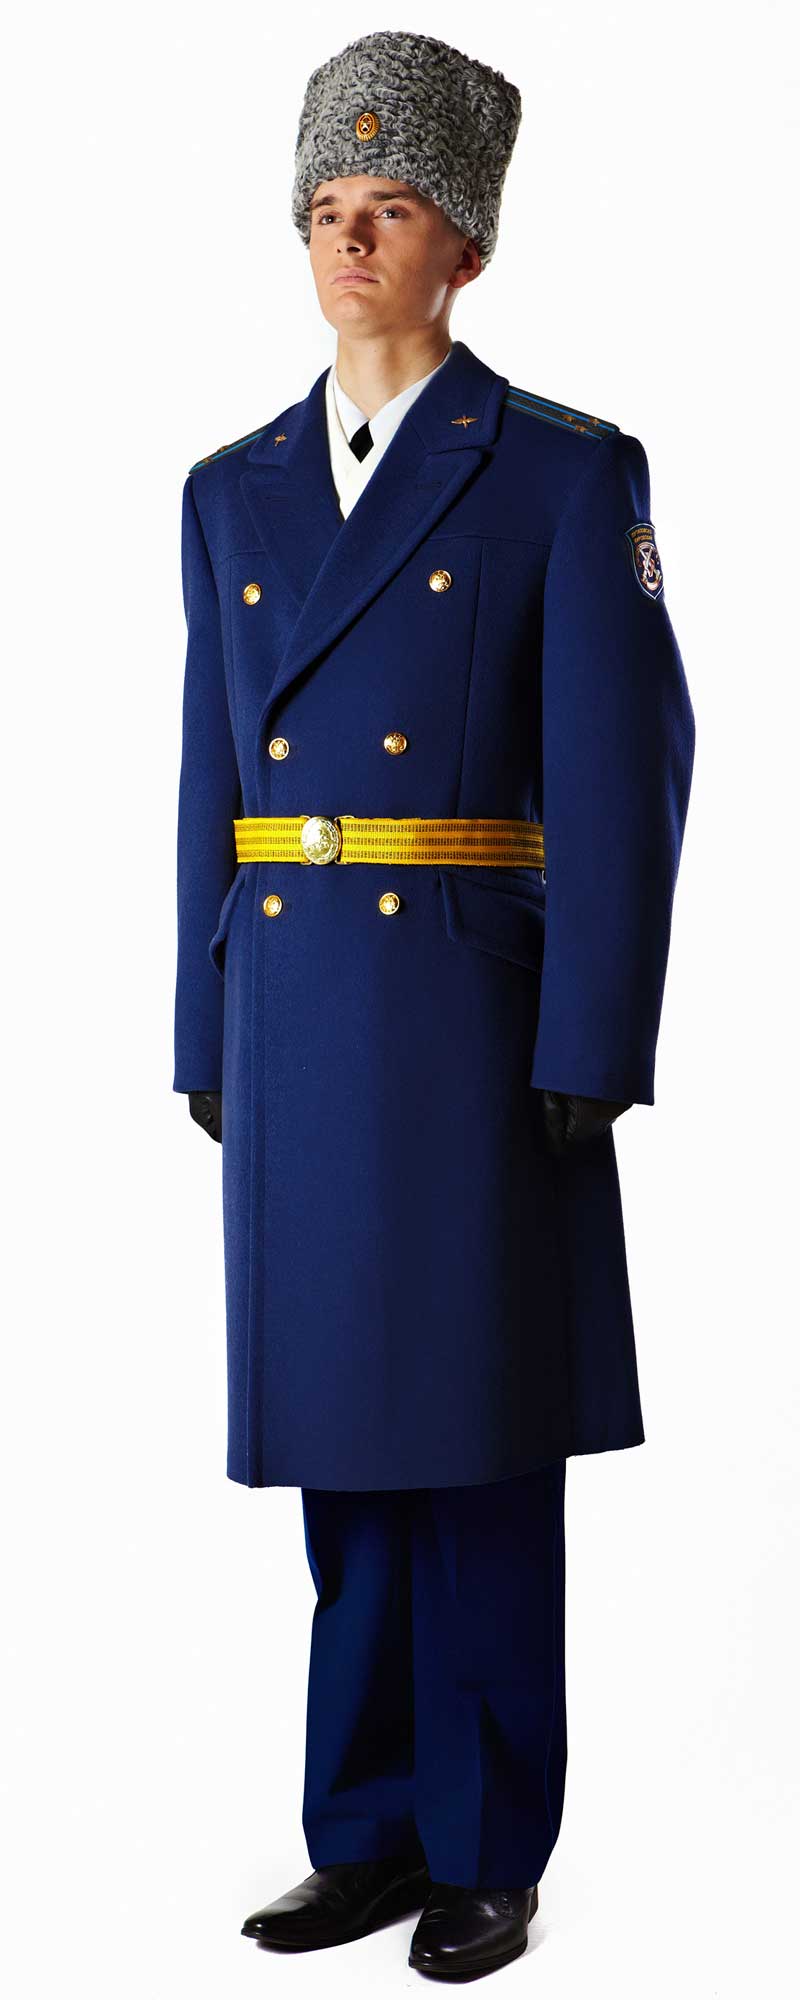 Форма ввс россии нового образца повседневная, офисная и парадная 2020, военных летчиков рядовых и офицеров, цвета одежды женщин, зимняя и летняя